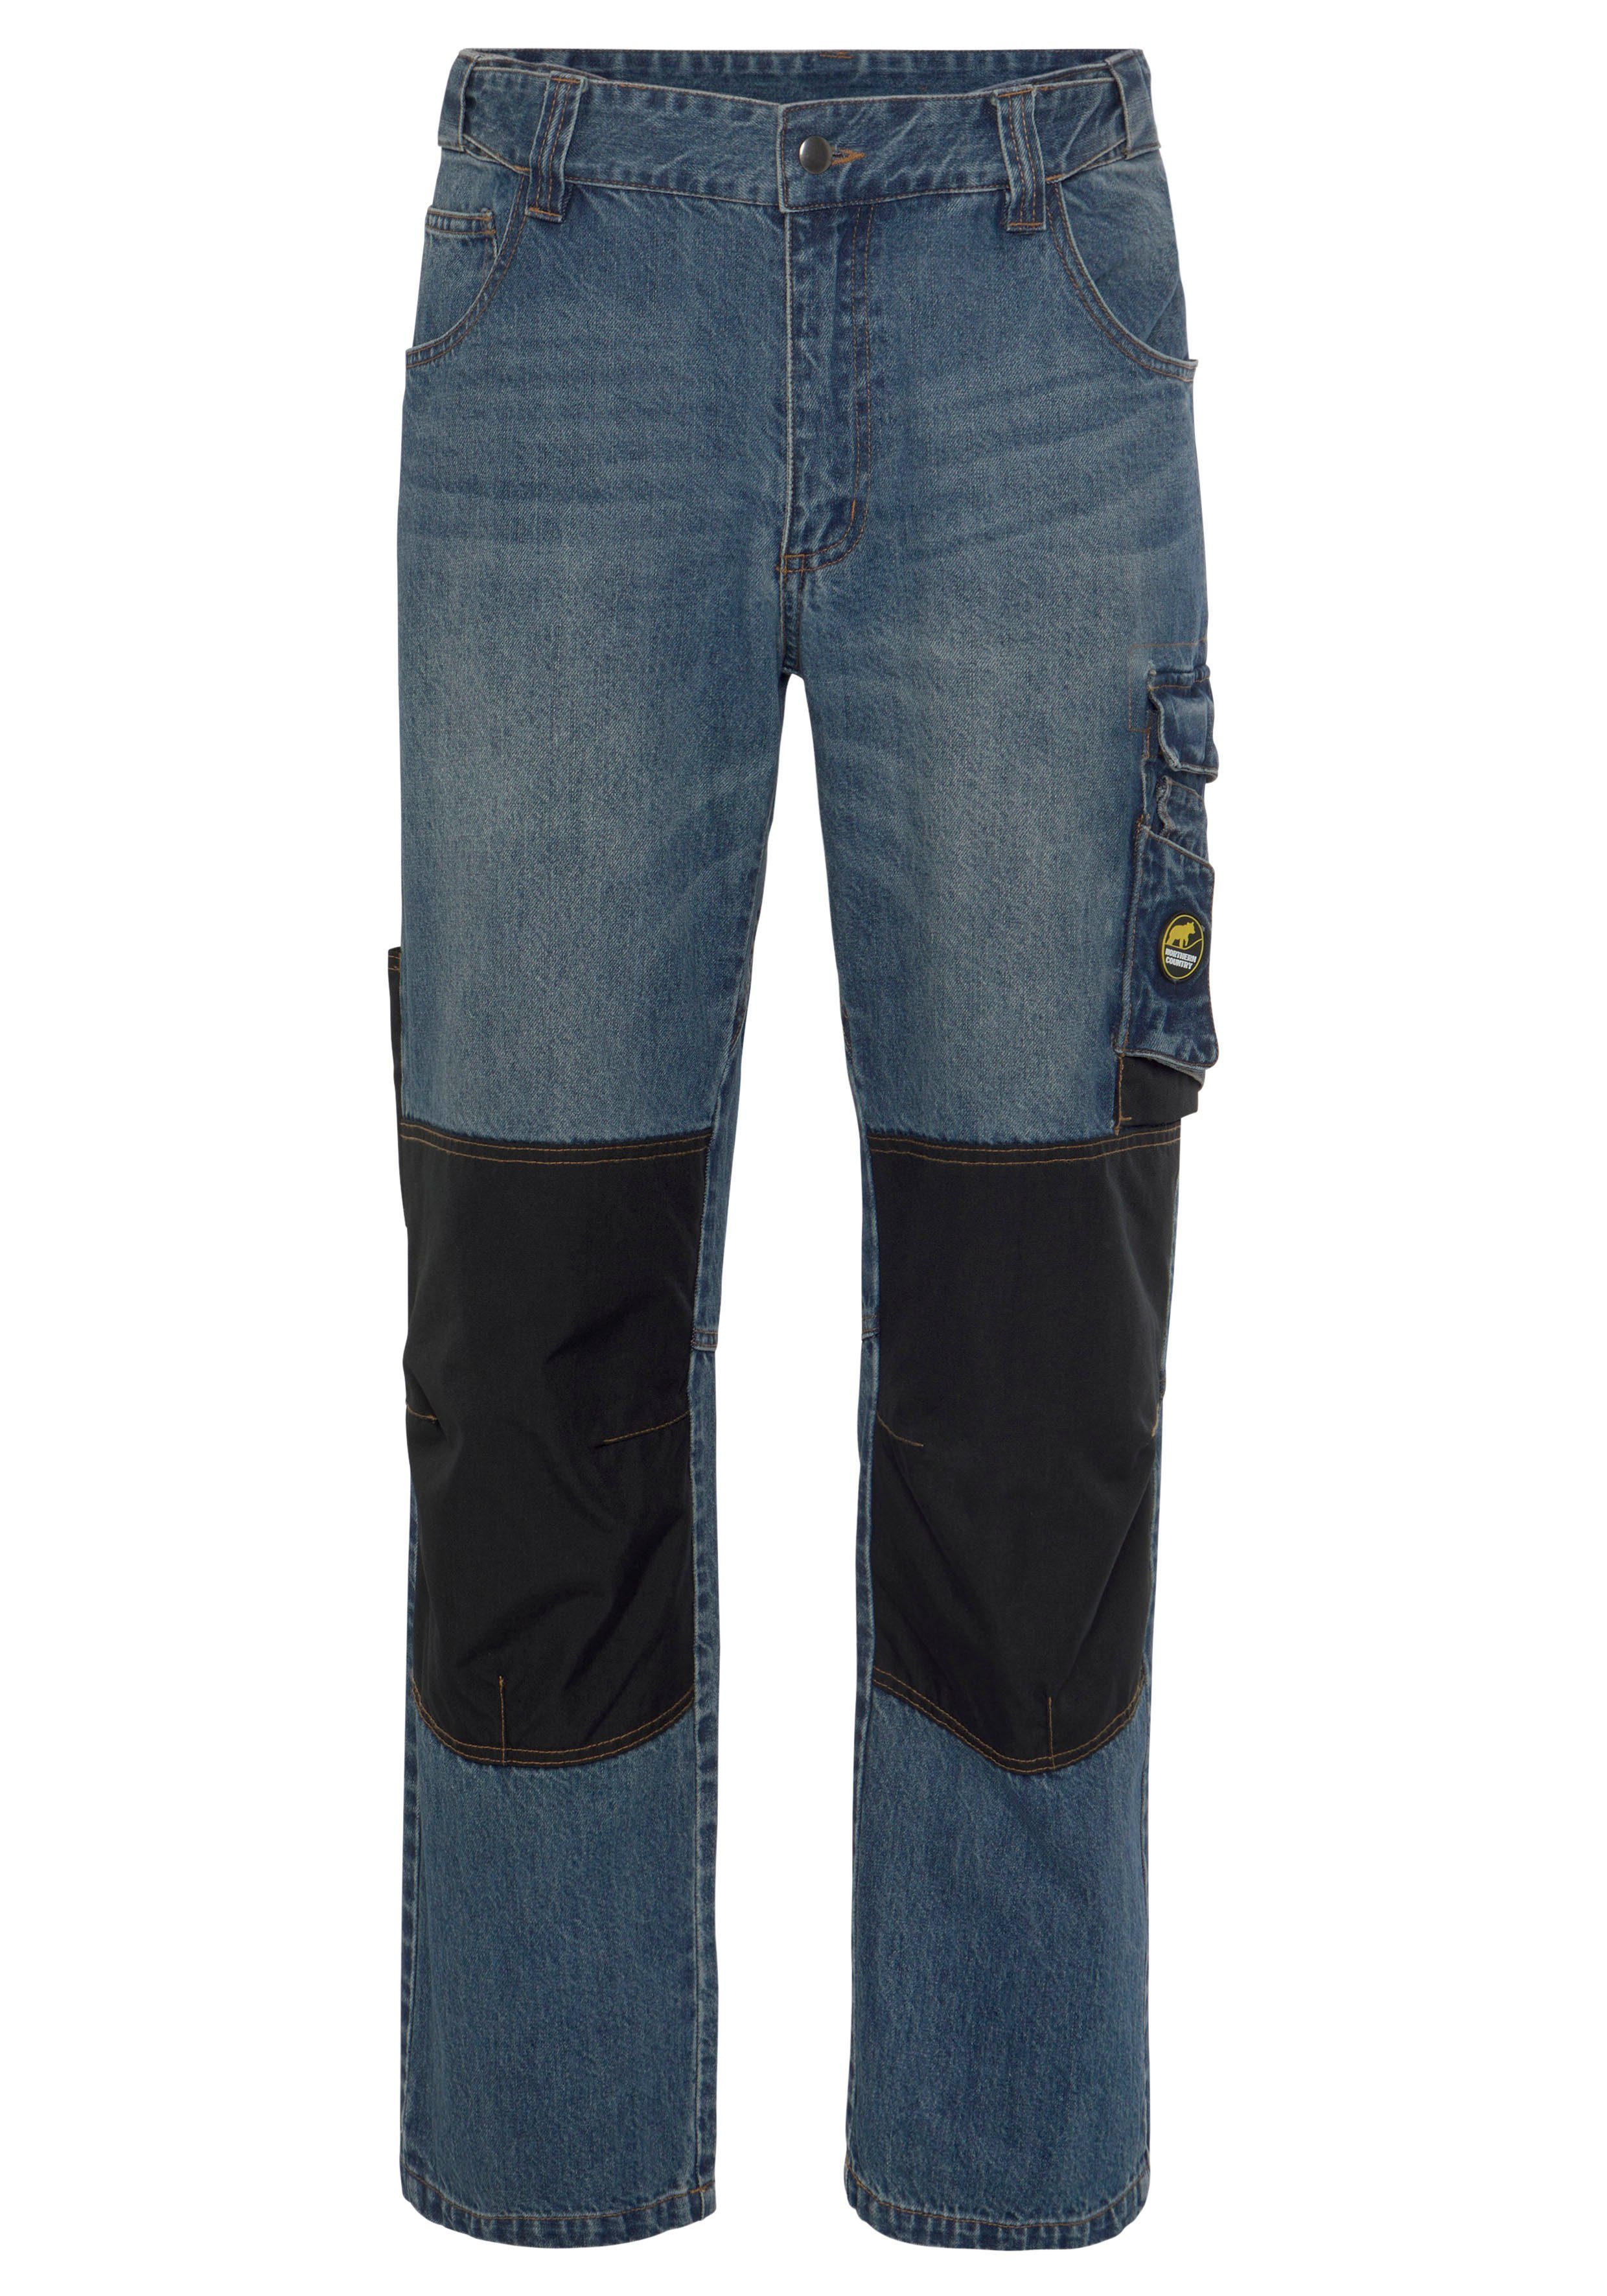 Northern Country Arbeitshose Multipocket Jeans (aus 100% Baumwolle, robuster Jeansstoff, comfort fit) mit dehnbarem Bund, 9 praktischen Taschen, Knieverstärkung aus Cordura | Baumwollhosen